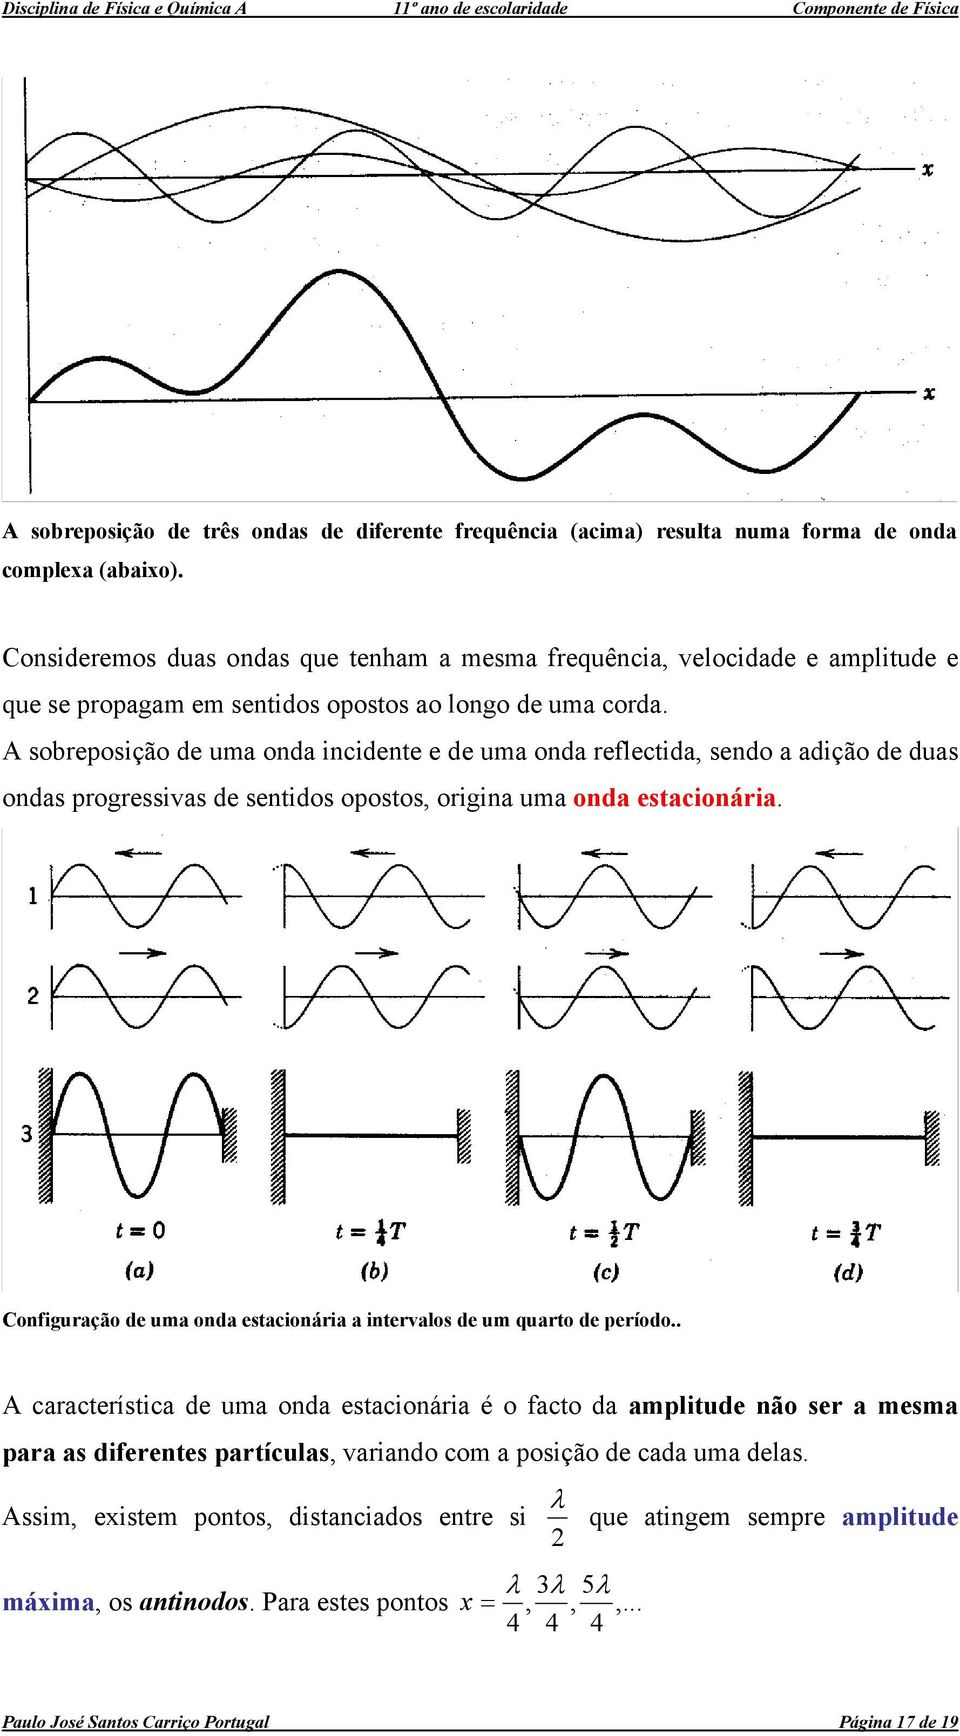 A sobreposição de uma onda incidente e de uma onda reflectida, sendo a adição de duas ondas progressivas de sentidos opostos, origina uma onda estacionária.